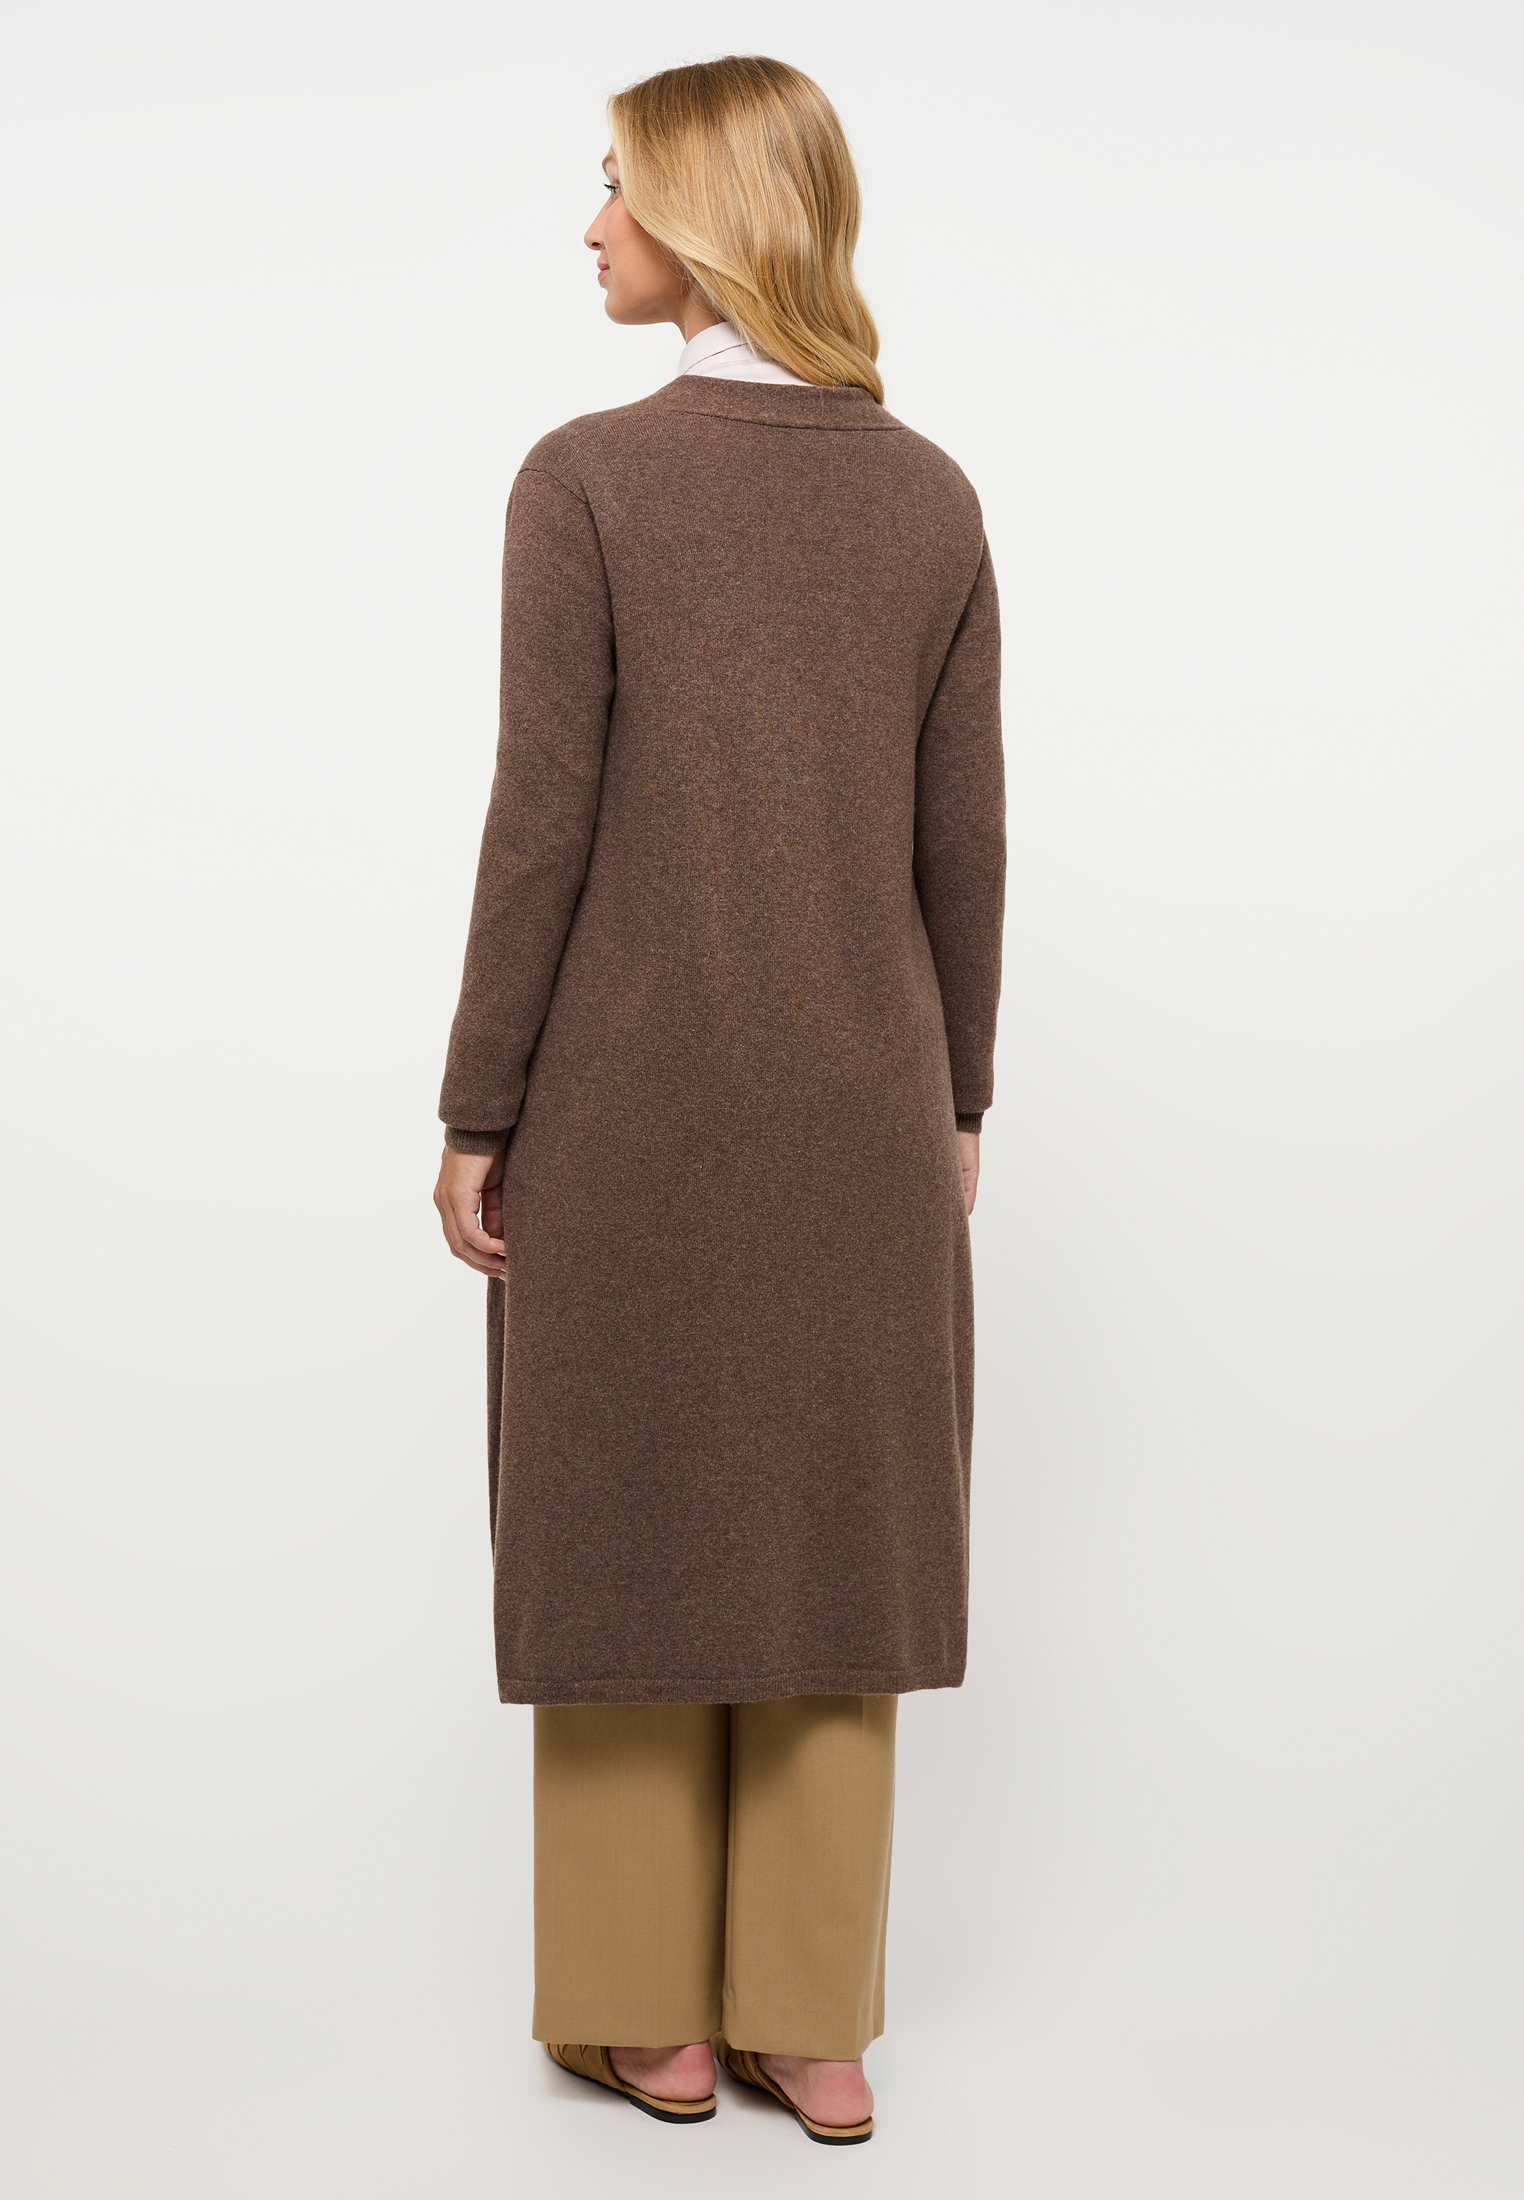 2XL | plain Knitted brown | dark | 2KN00093-02-92-2XL in dark brown cardigan